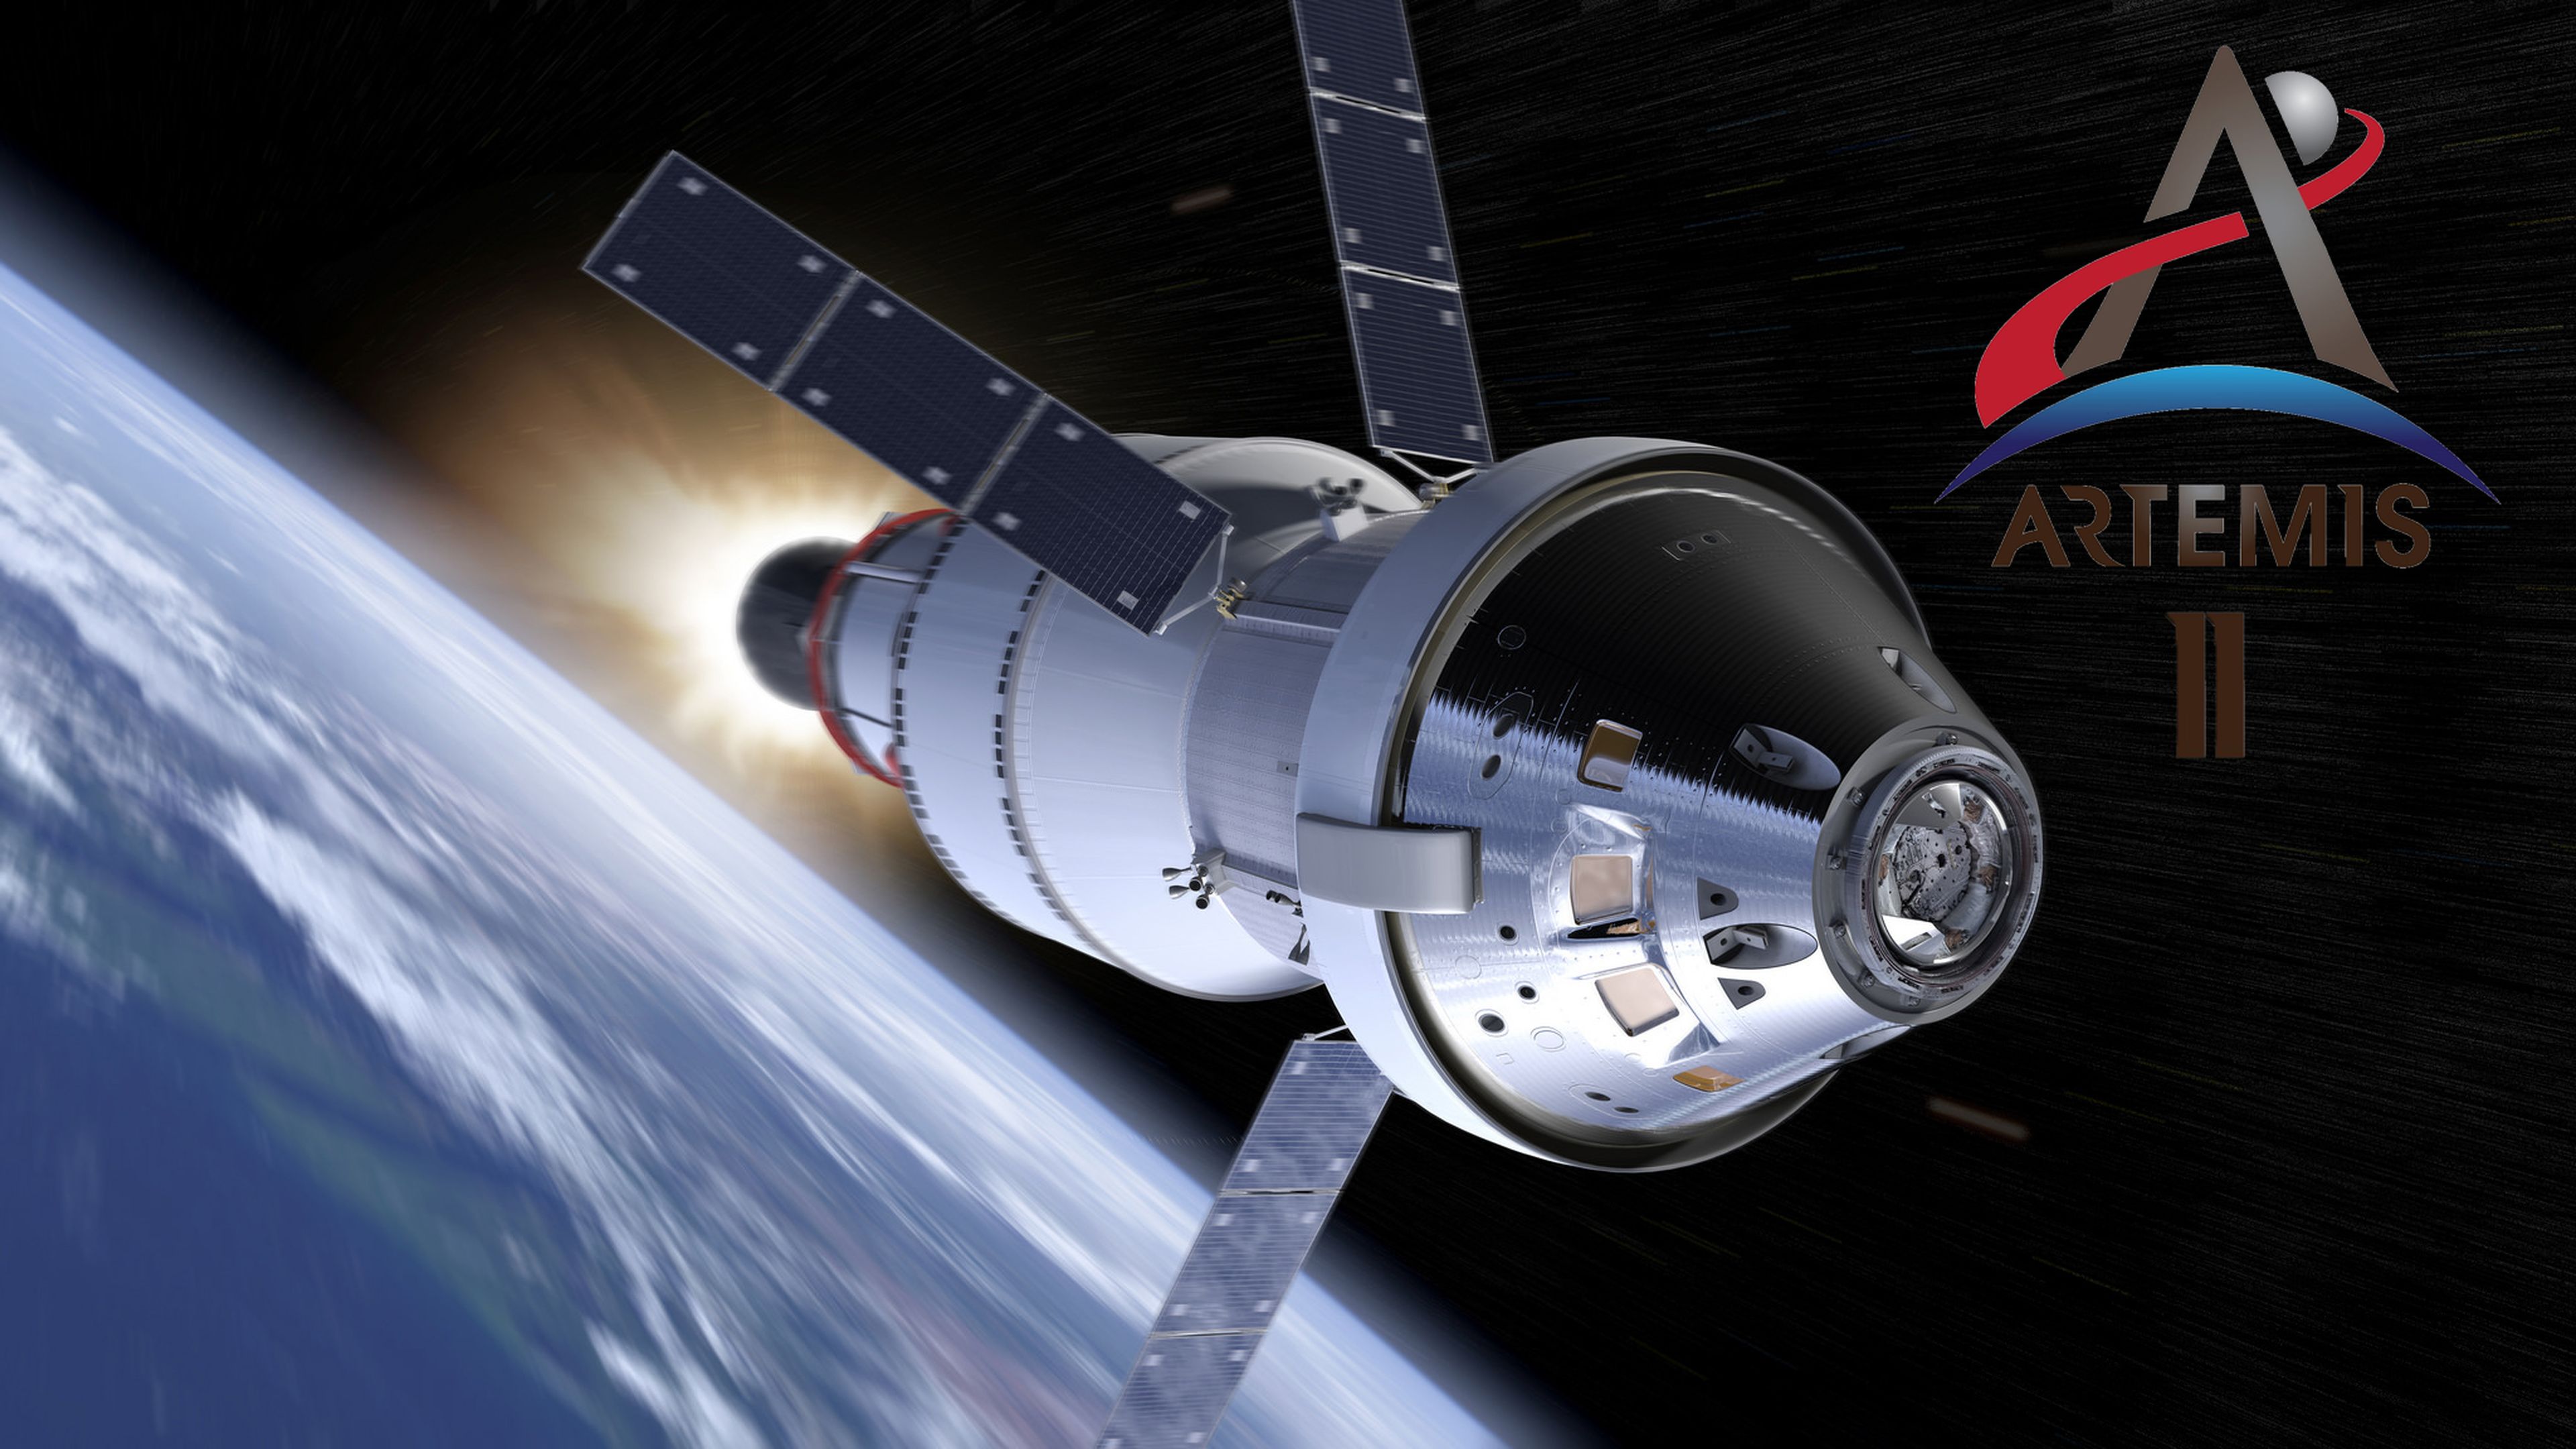 Artemis II: este es el siguiente paso de la NASA tras el aterrizaje de la nave espacial Orion